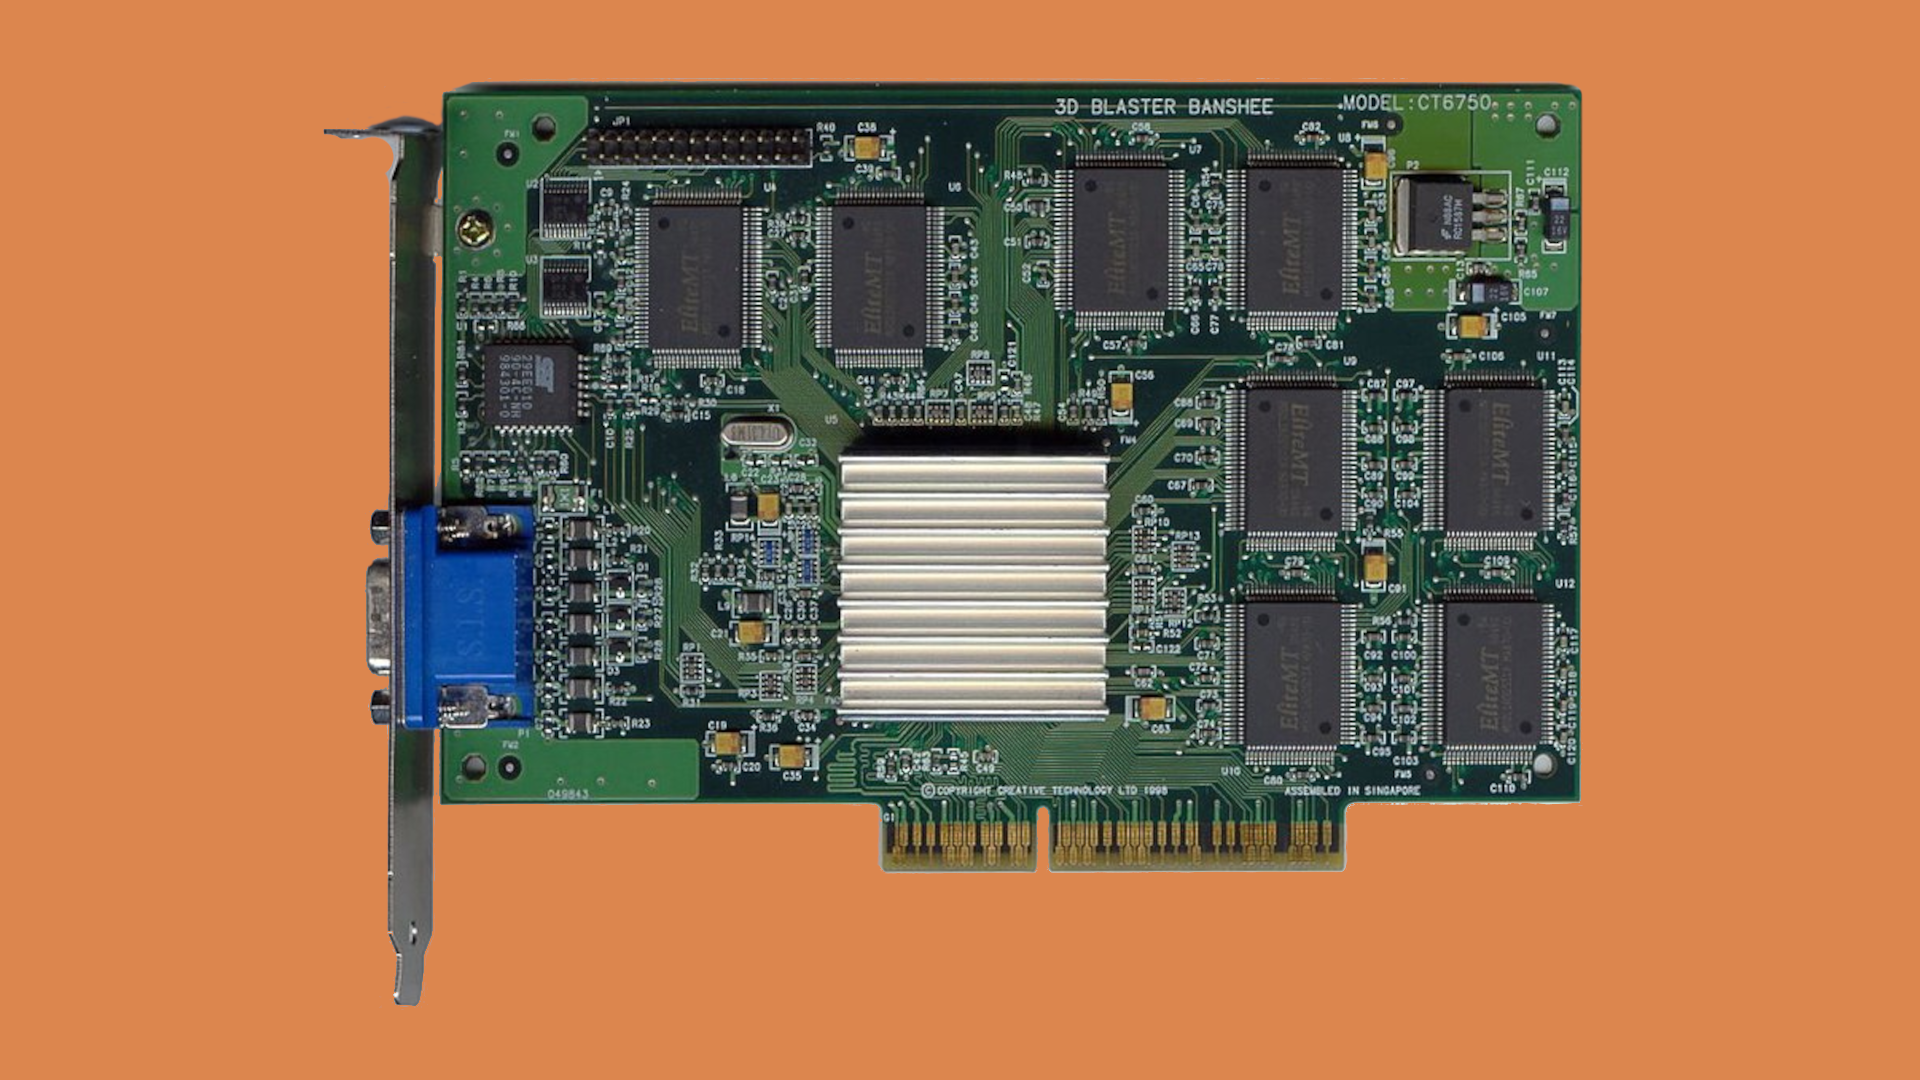 3dfx Voodoo Banshee AGP graphics card on orange background